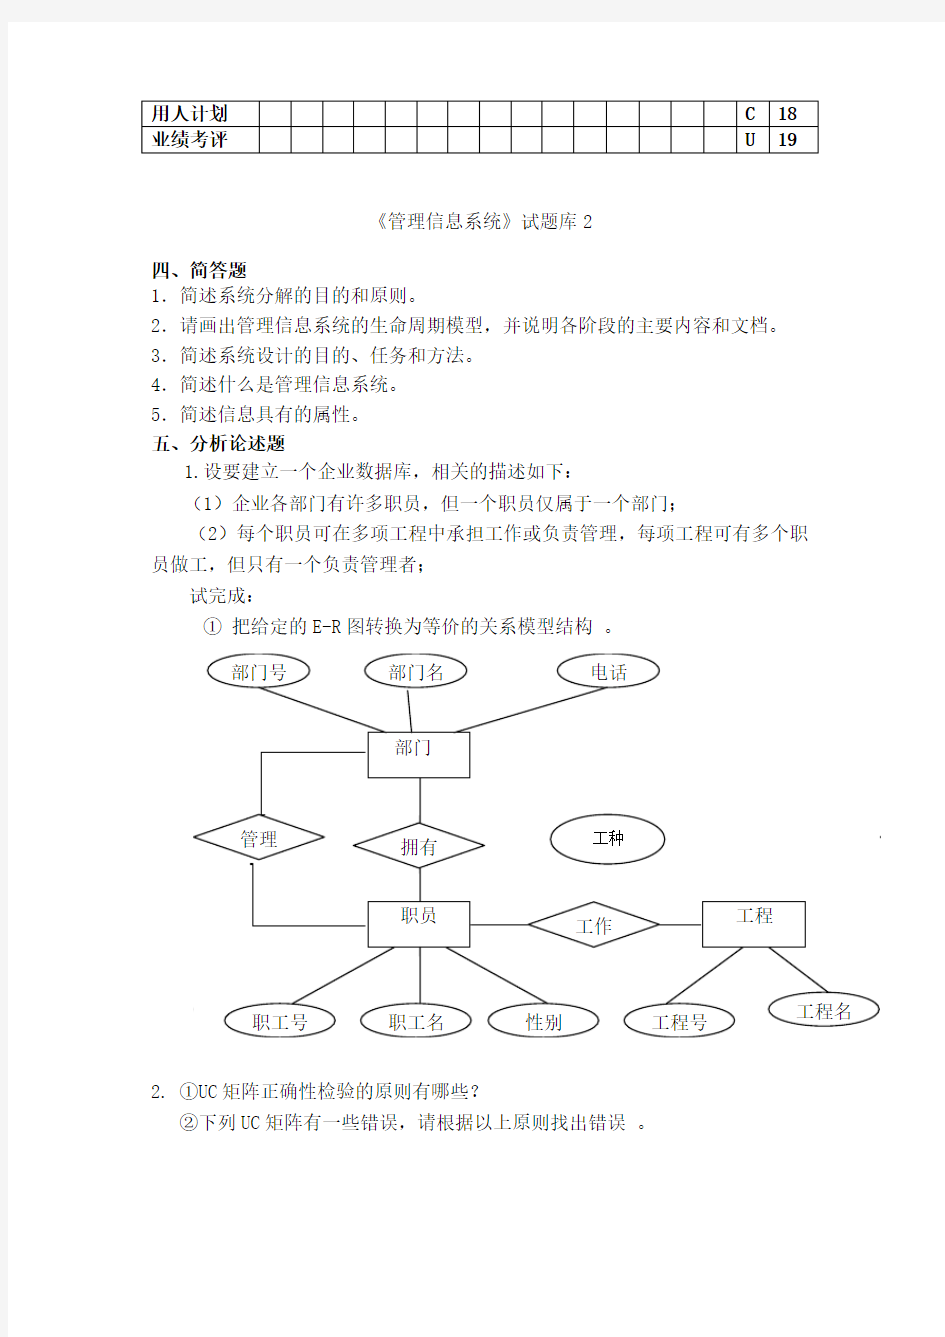 淮阴工学院管理信息系统题库(8套)及答案(8套)